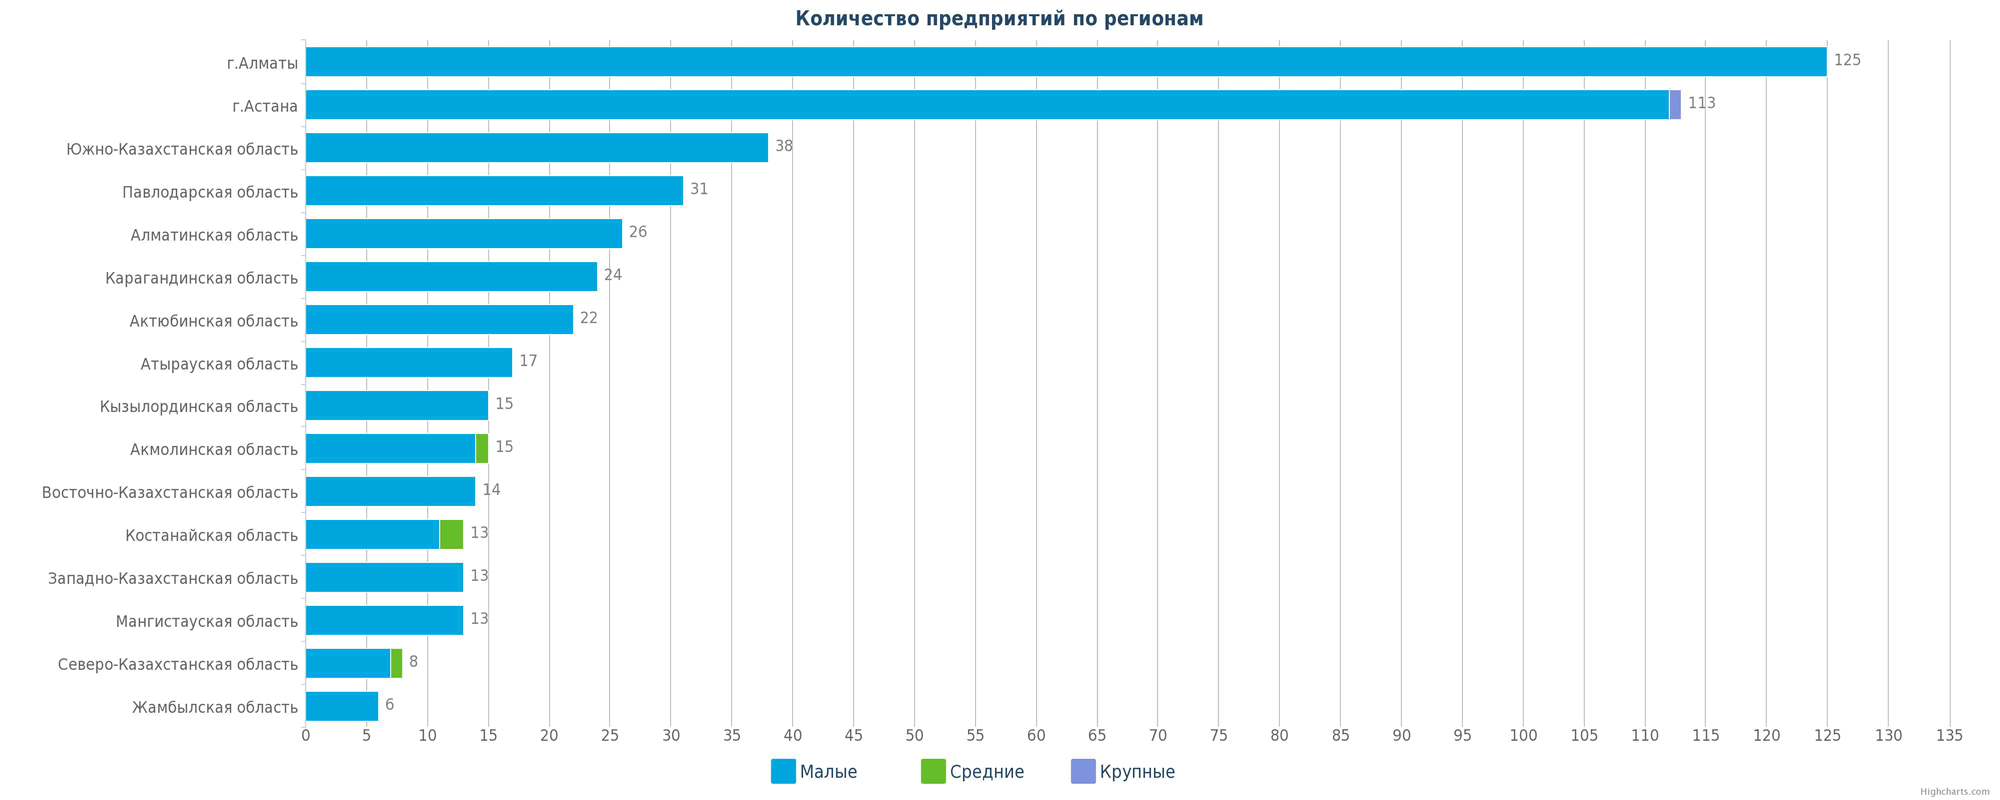 Количество новых предприятий в справочнике по регионам Казахстана